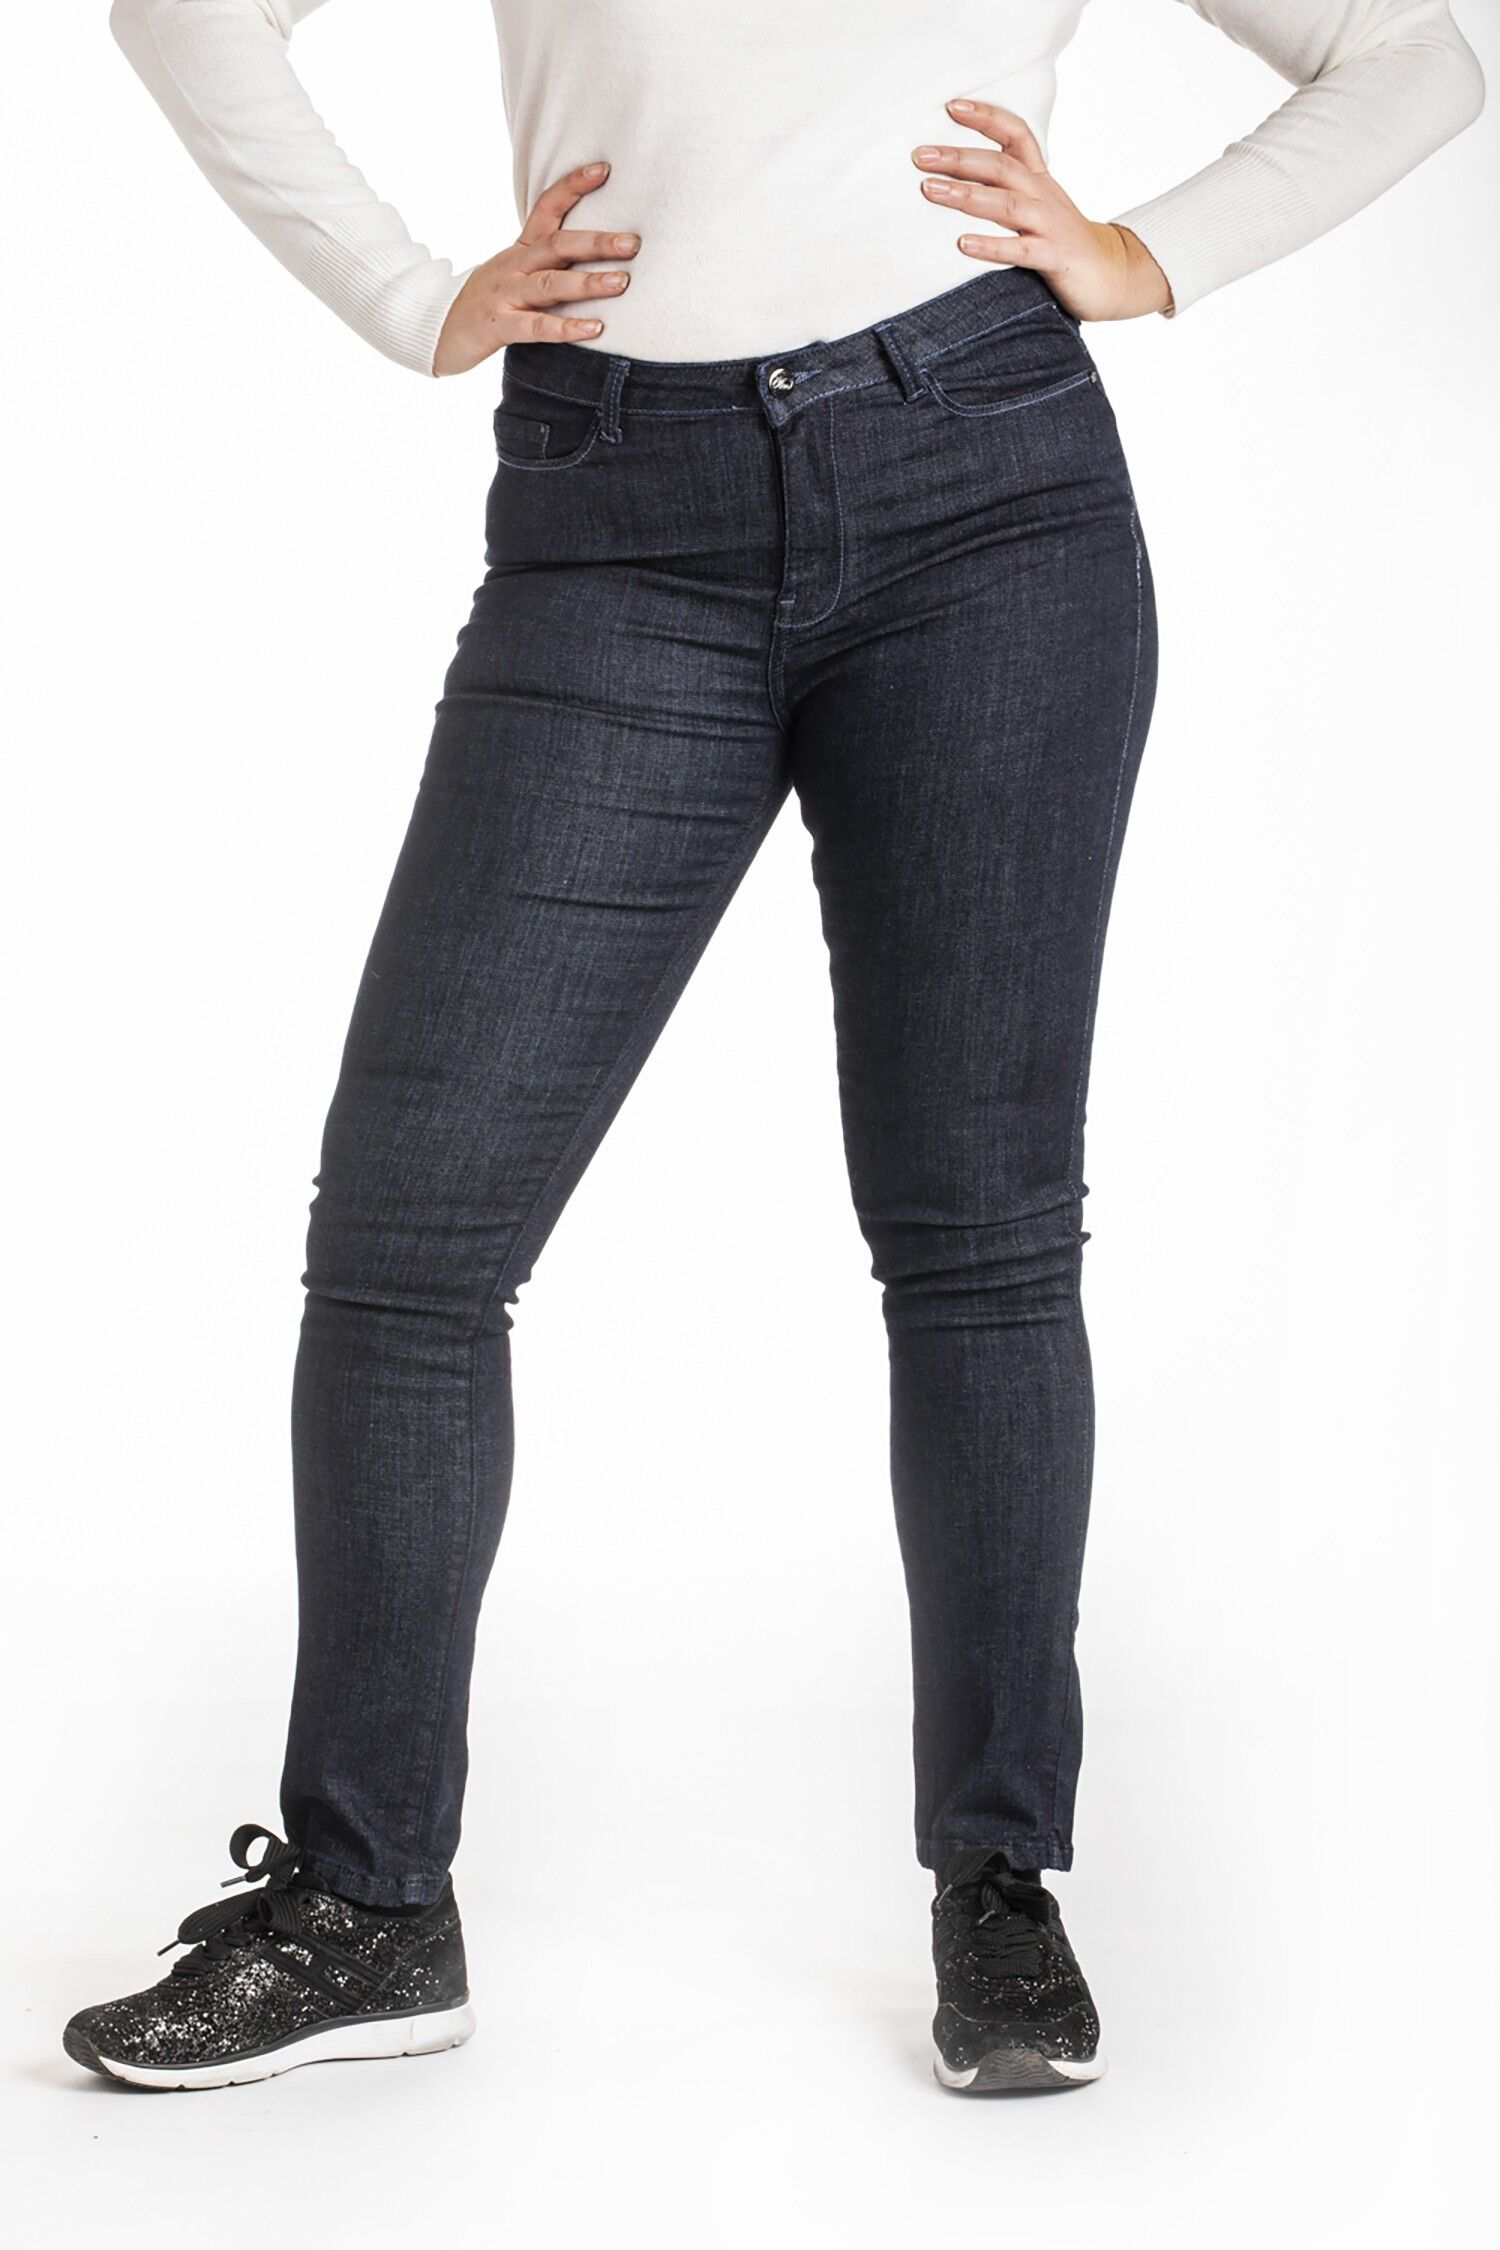 Buy wholesale High waist slim jeans raw stretch denim